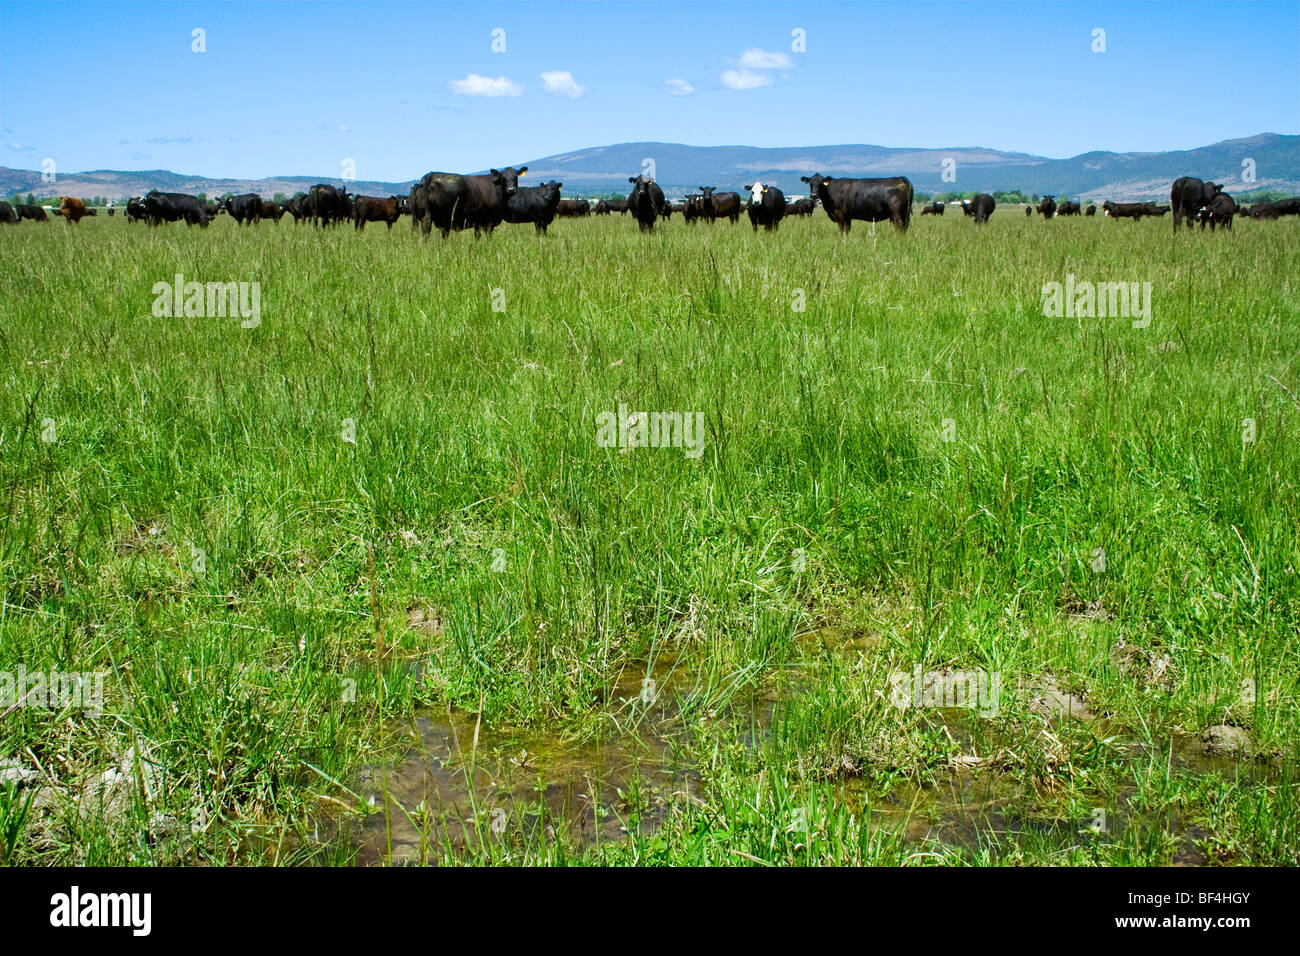 Vieh - Herde der Black Angus Rinder auf einer grünen Weide / Nord-Kalifornien, USA. Stockfoto